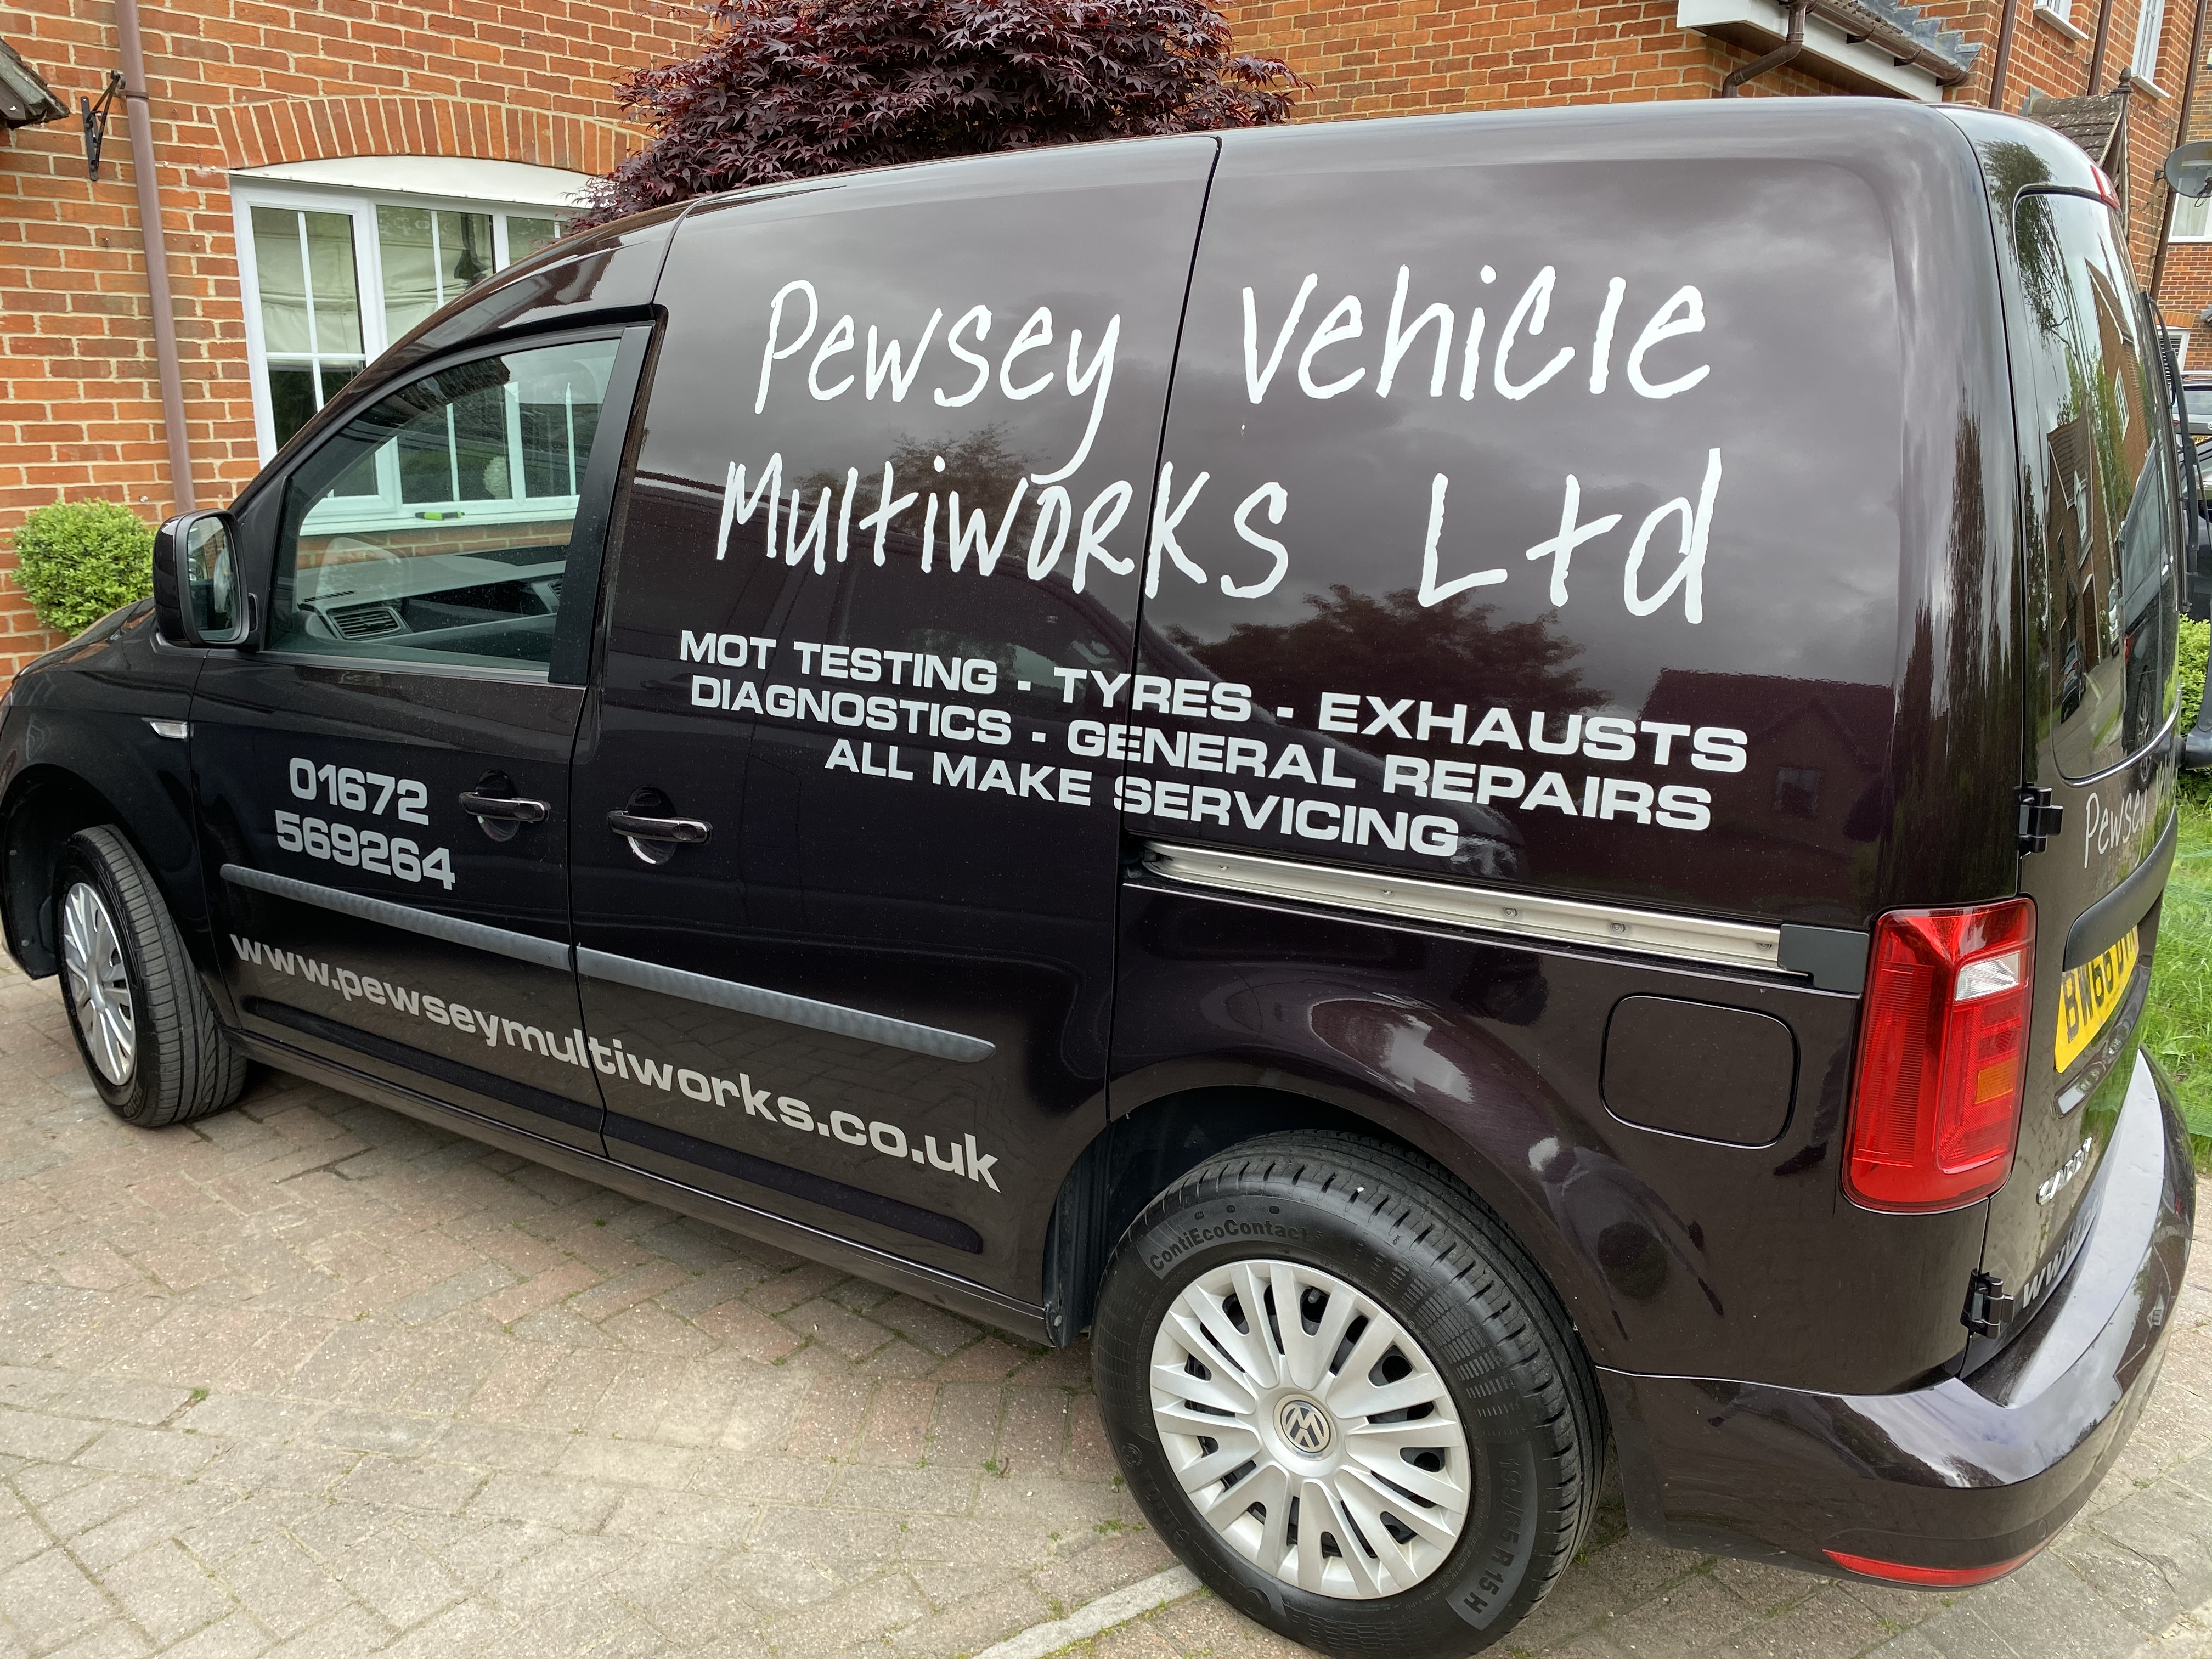 Image 5 of Pewsey Vehicle Multiworks Ltd